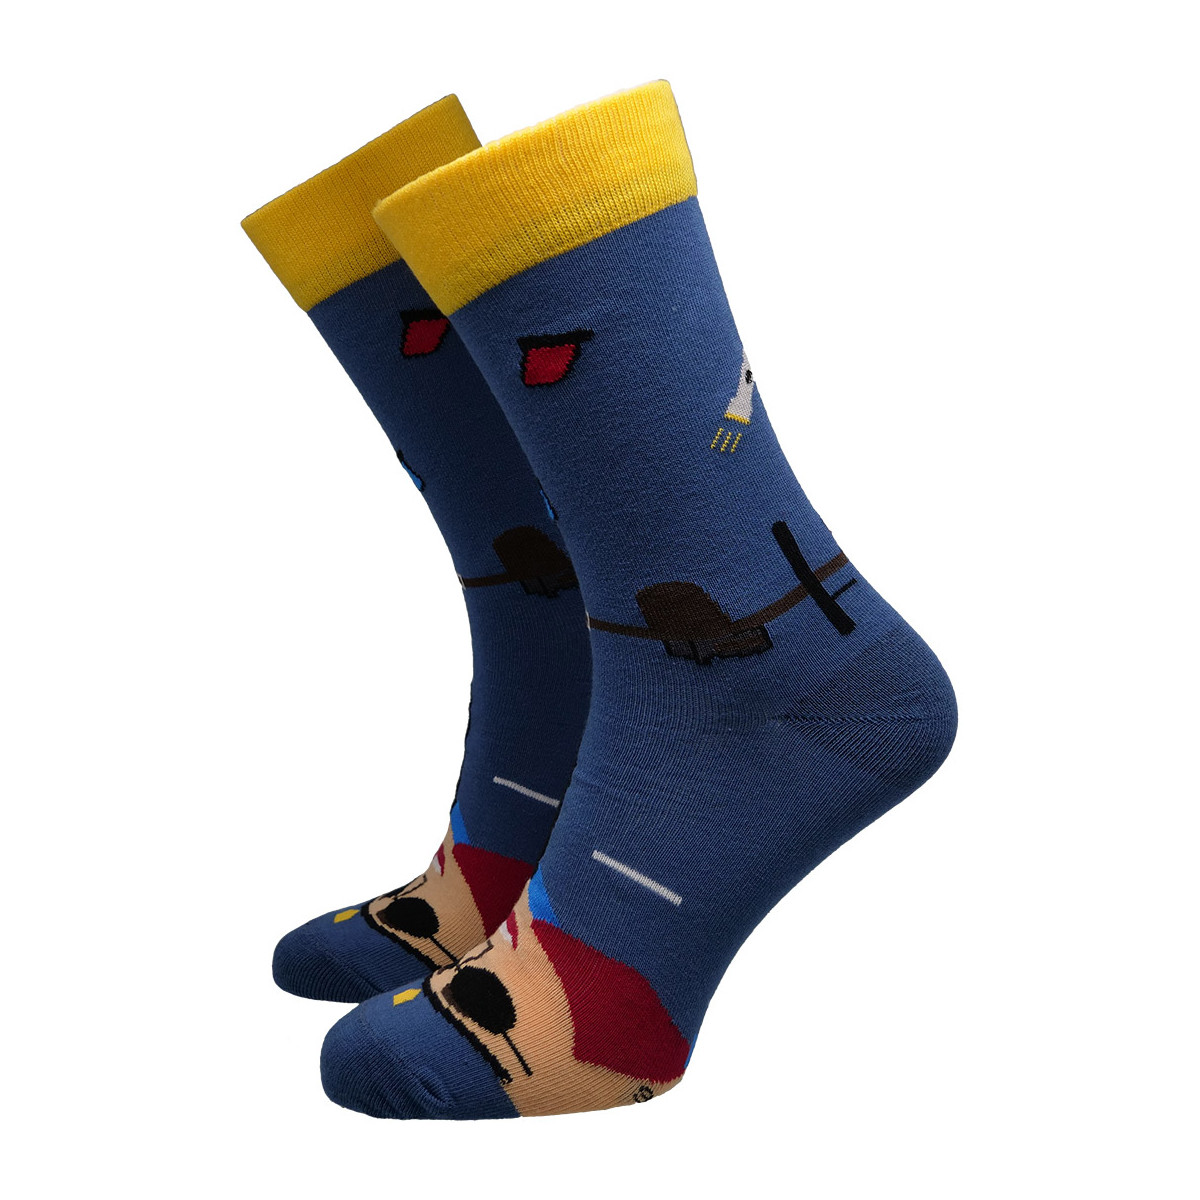 Doplňky  Doplňky k obuvi Hesty Socks unisex ponožky Cope modré Tmavě modrá